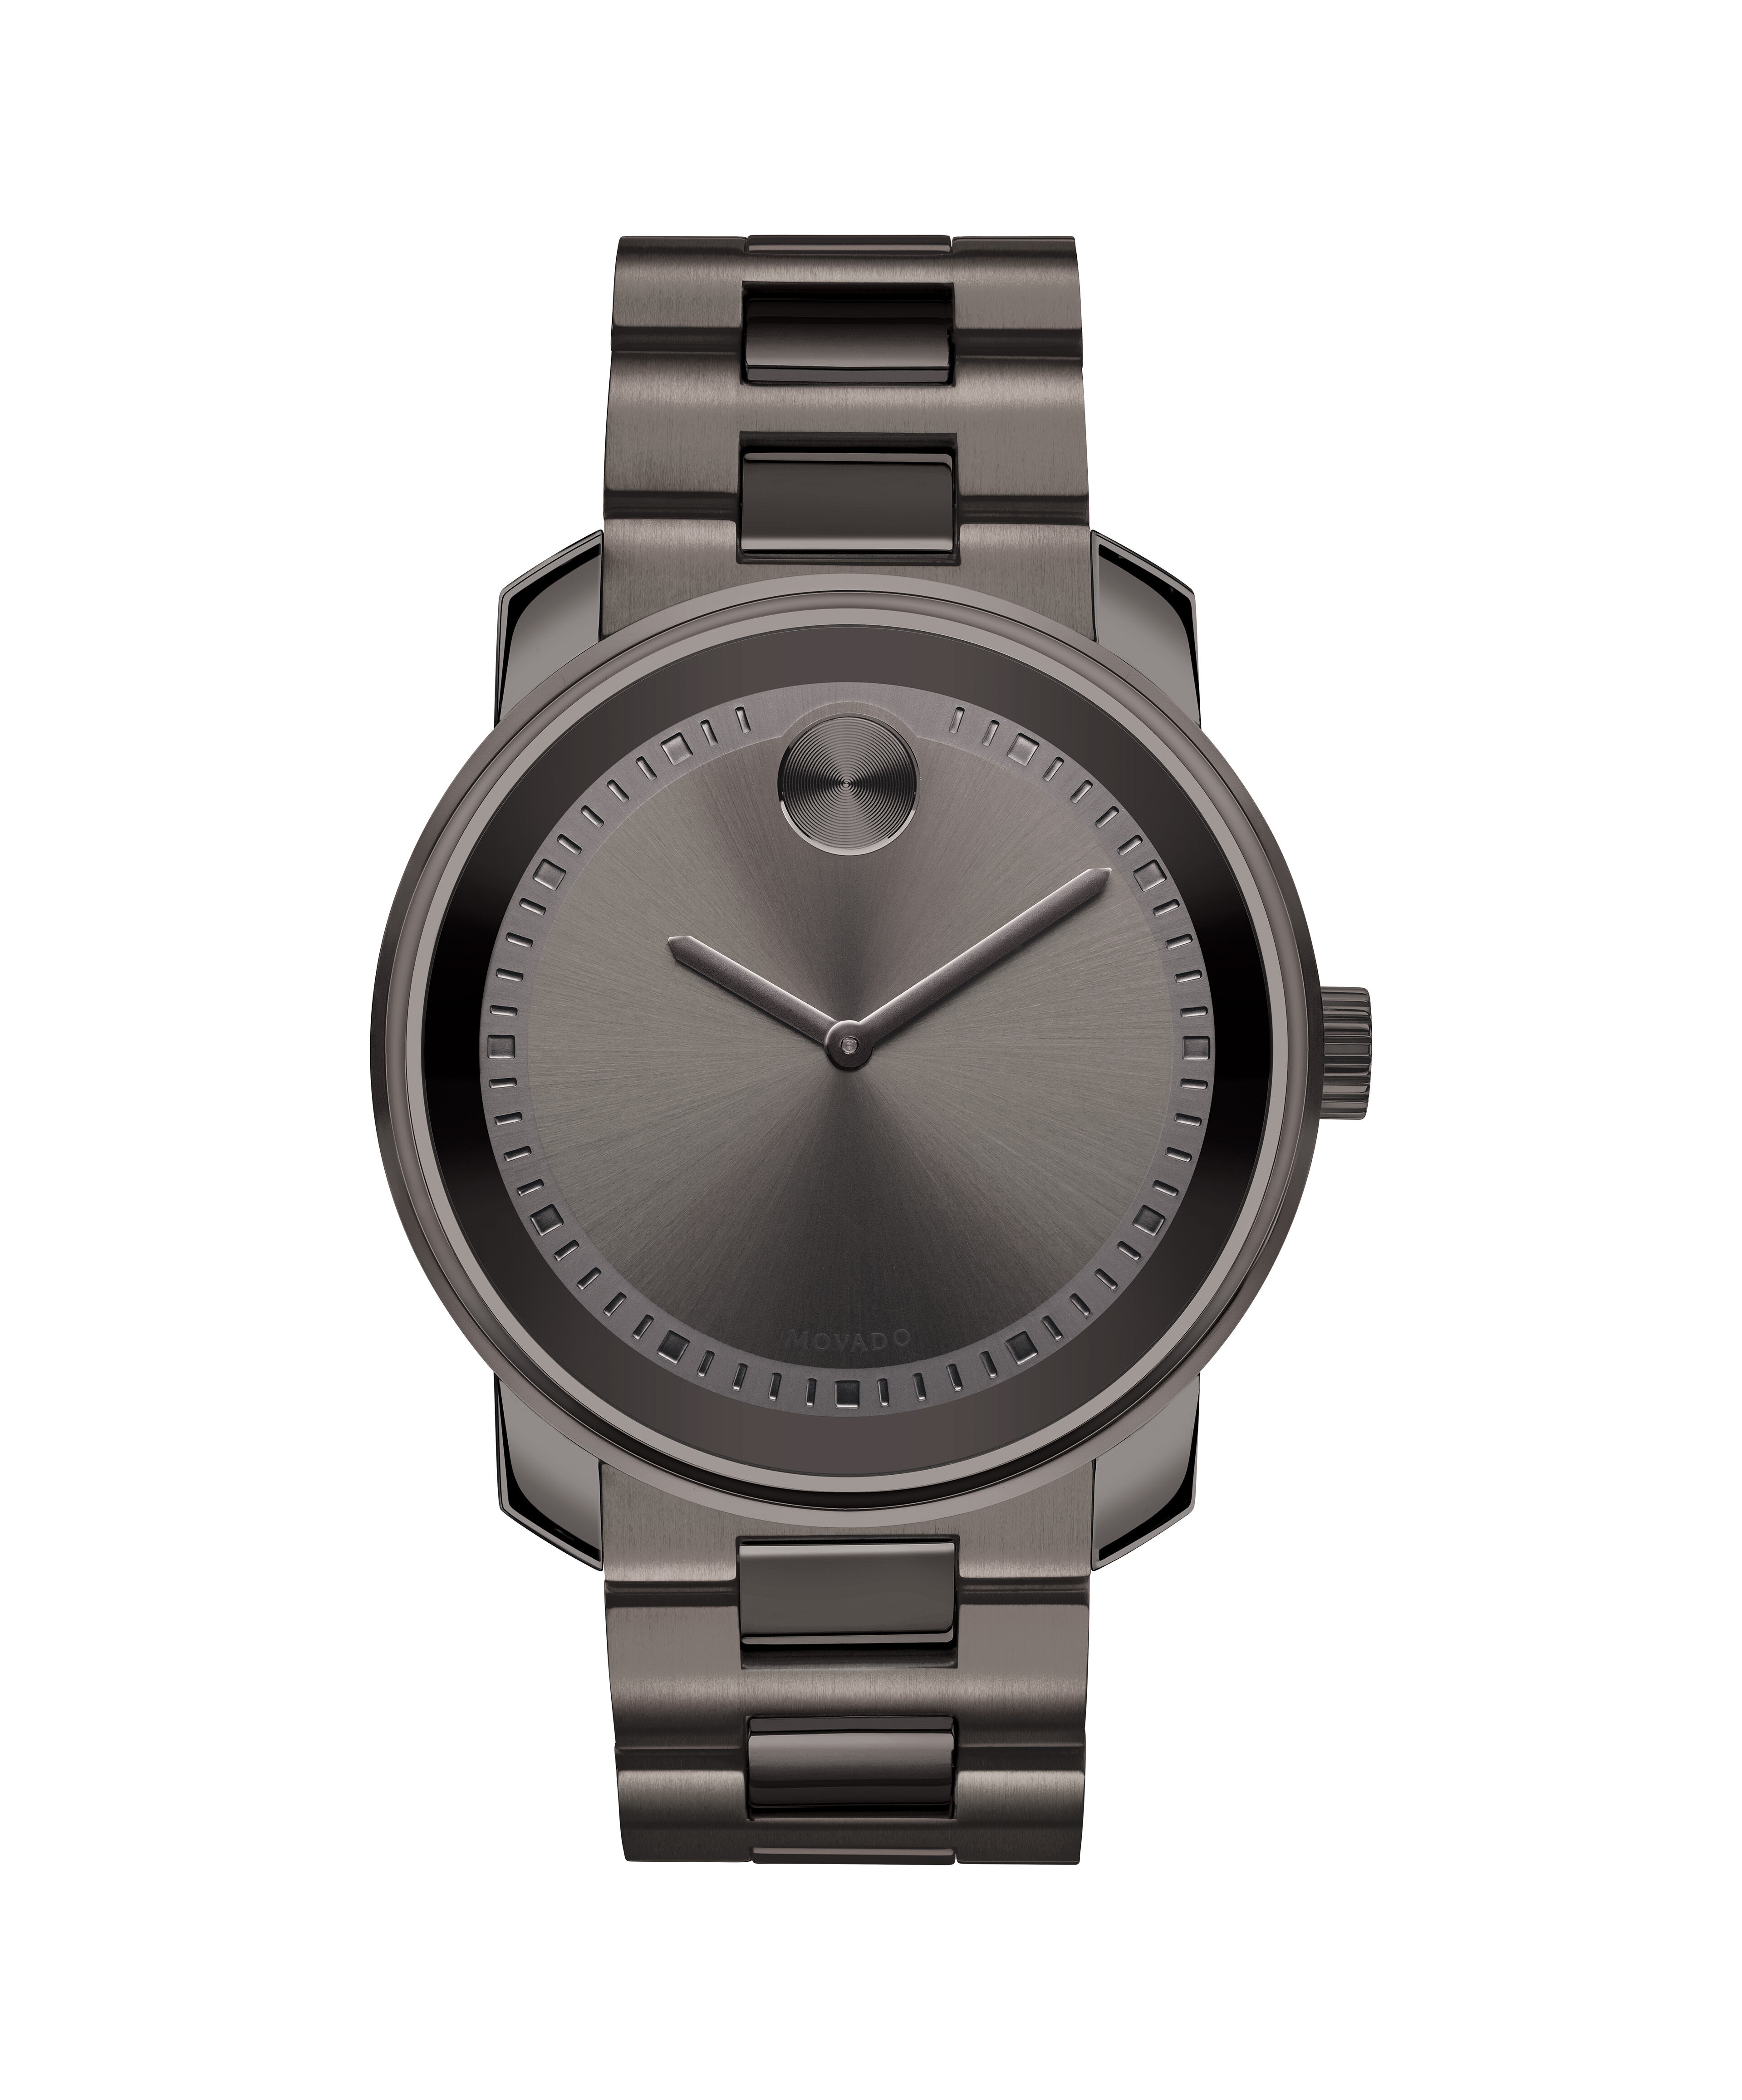 Rolex Replica Watches Ebay